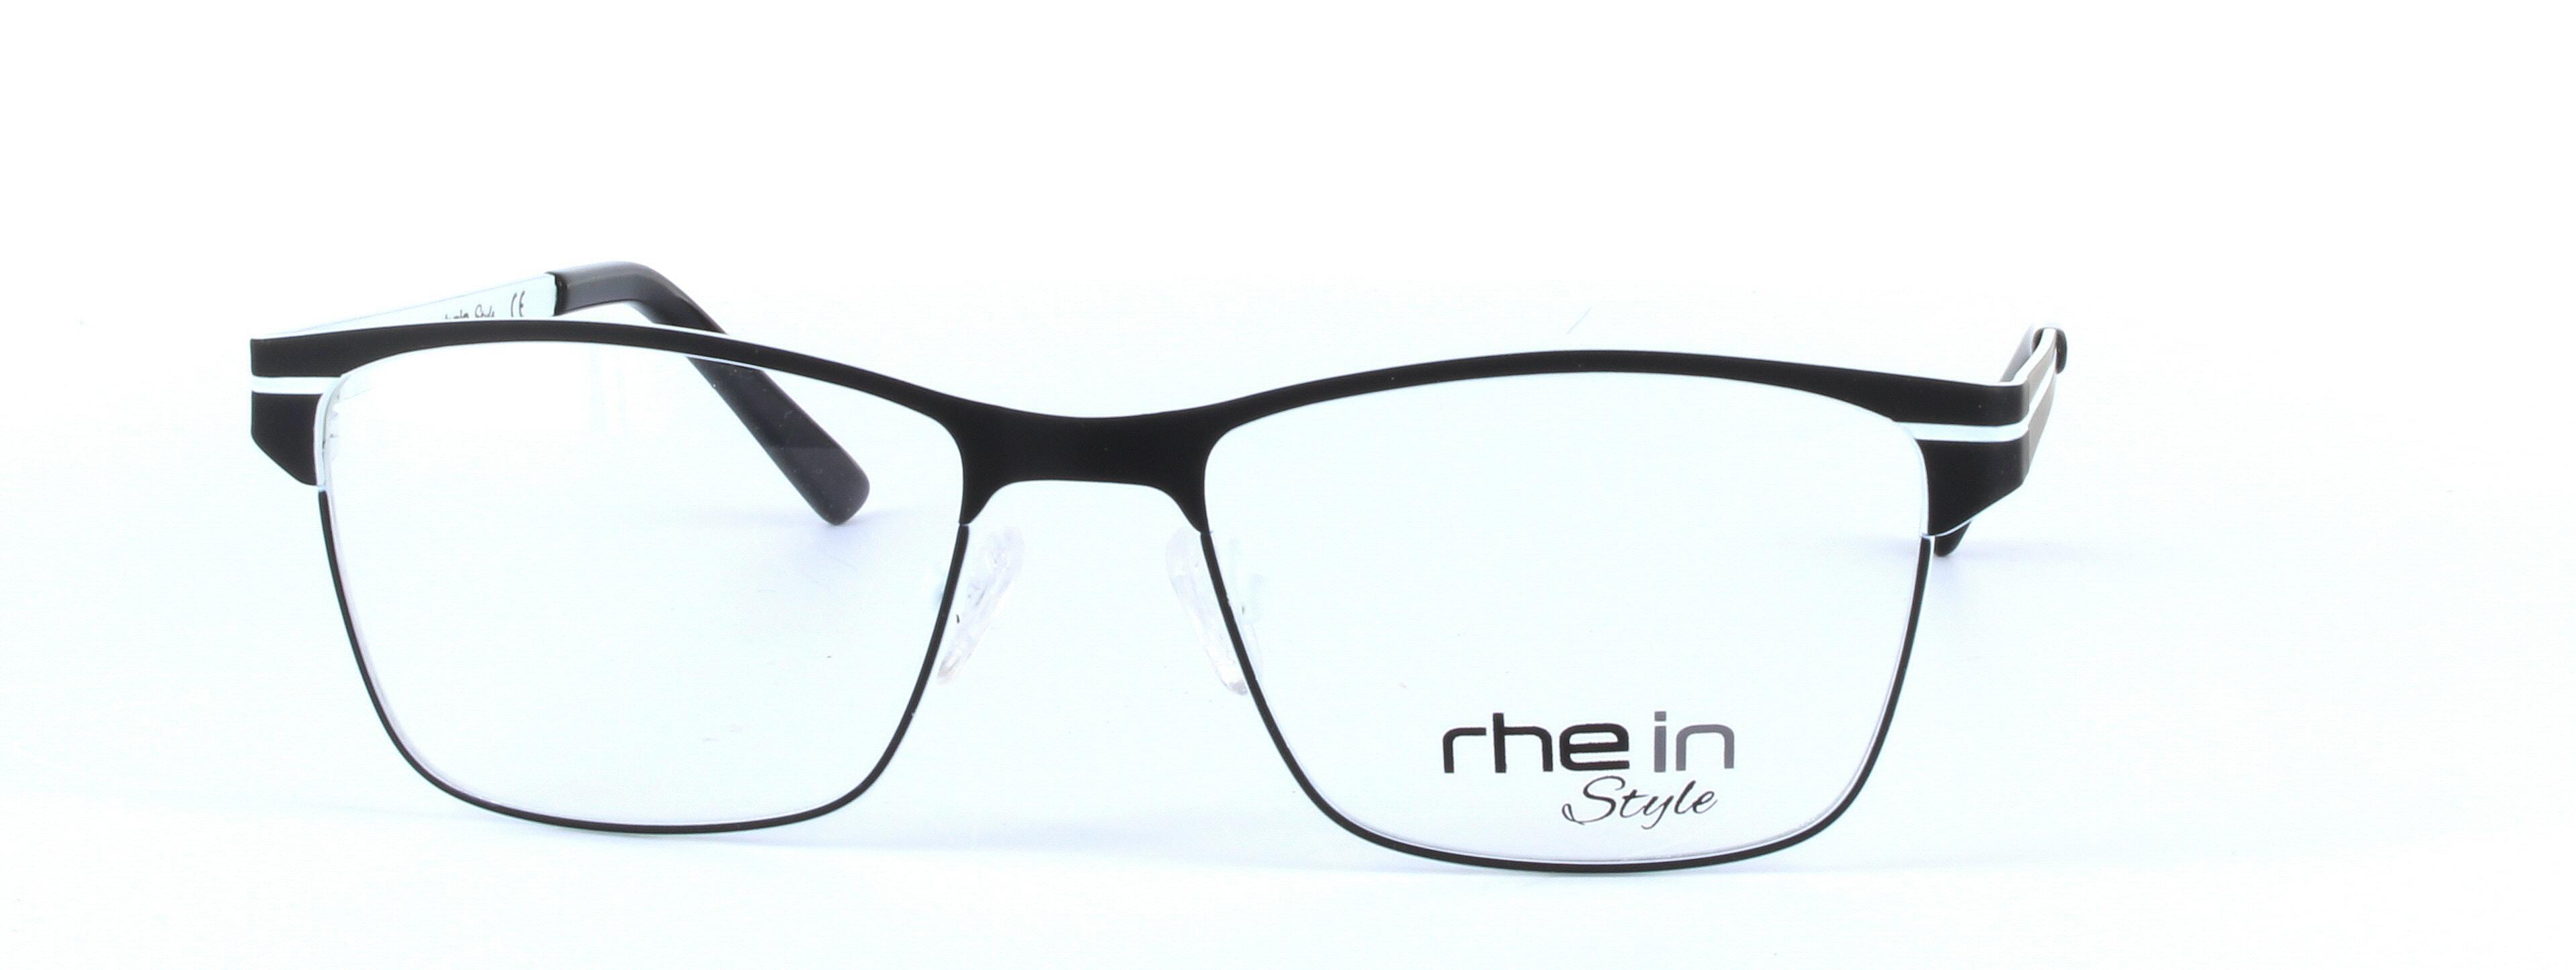 Lyra Black Full Rim Oval Metal Glasses - Image View 5